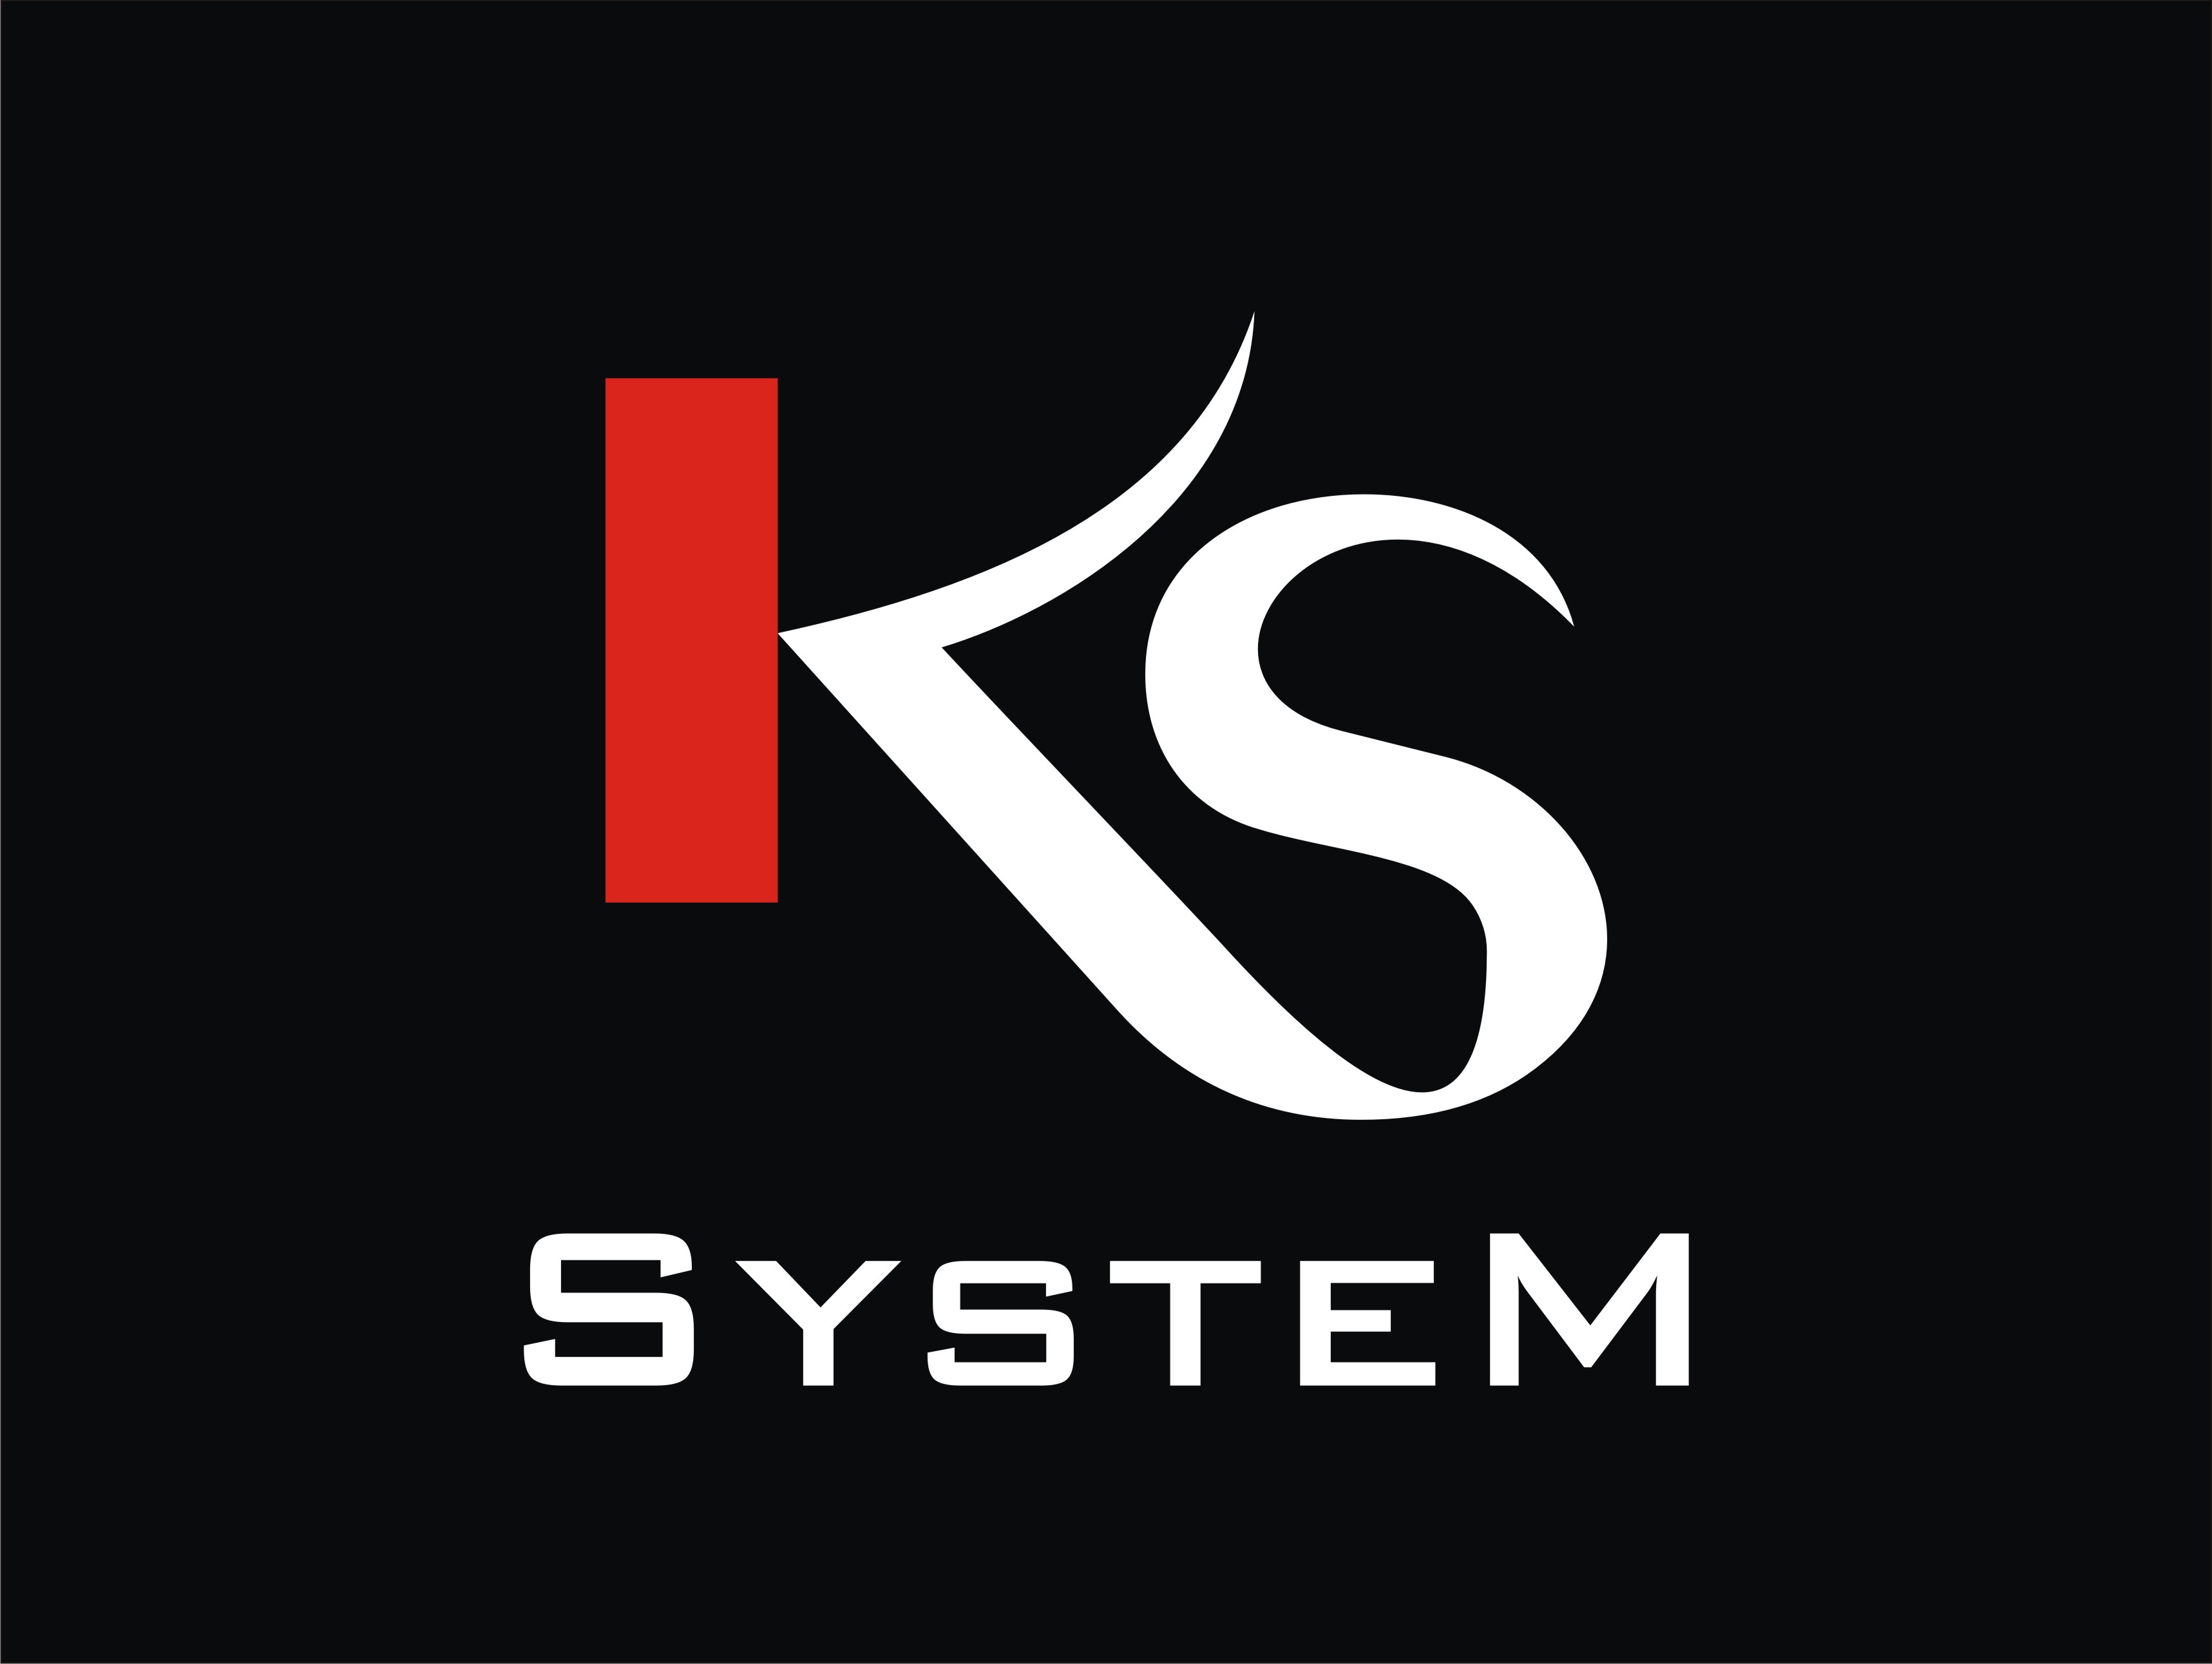 ks system bez www Logotyp - jpg.jpg